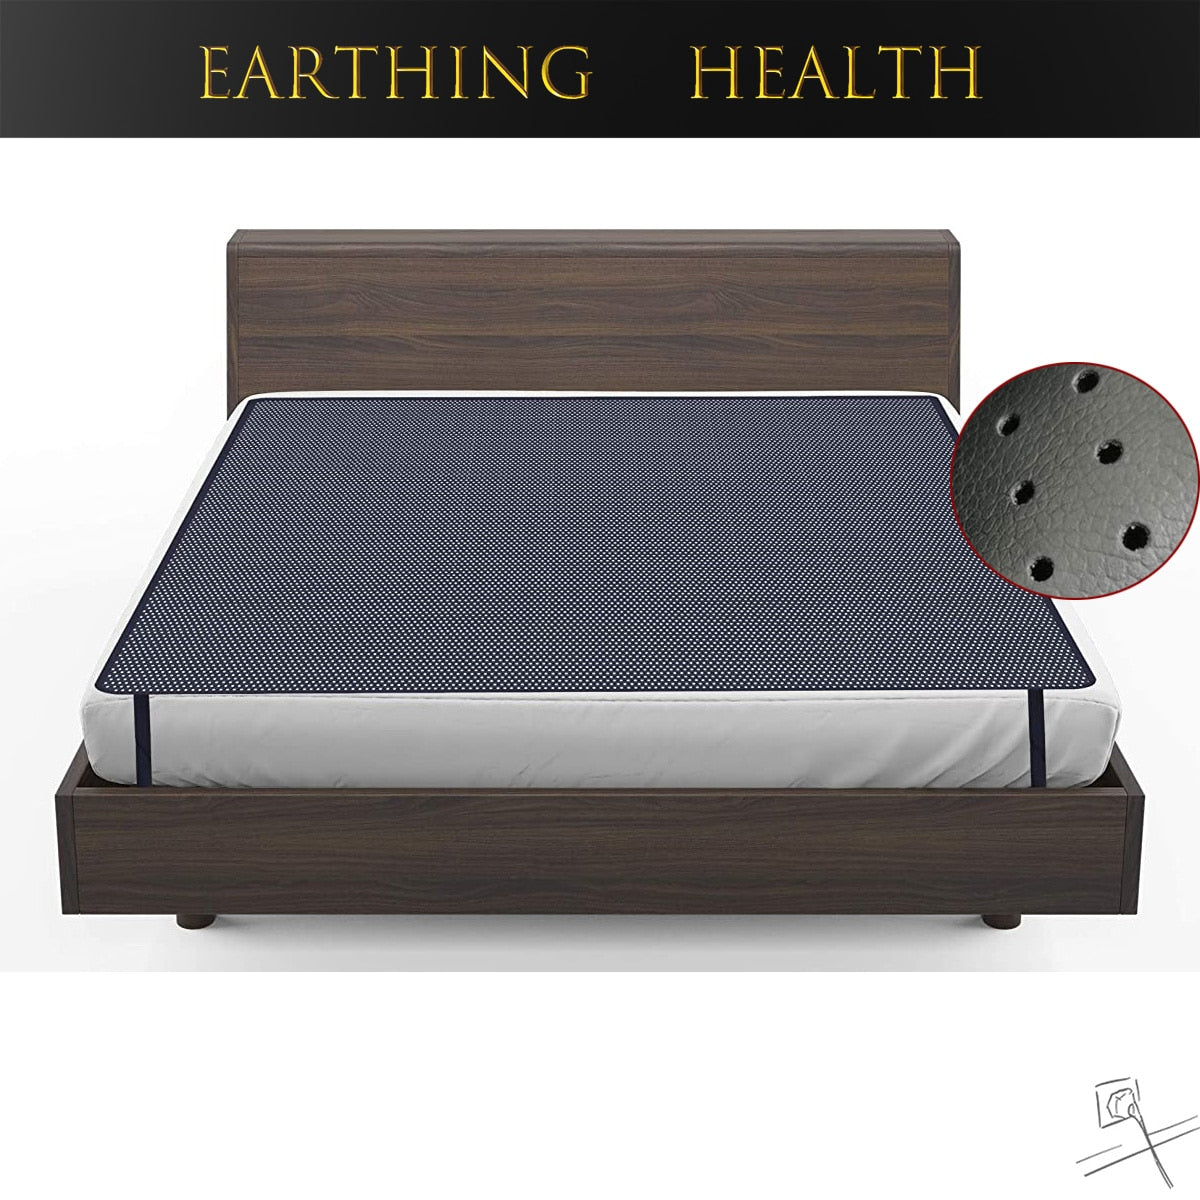 ملاءة سرير تأريض، سجادات معالجة أرضية ممتازة للنوم، وسادة موصلة مسامية، مضادة للكهرباء الساكنة، تحسن الصحة